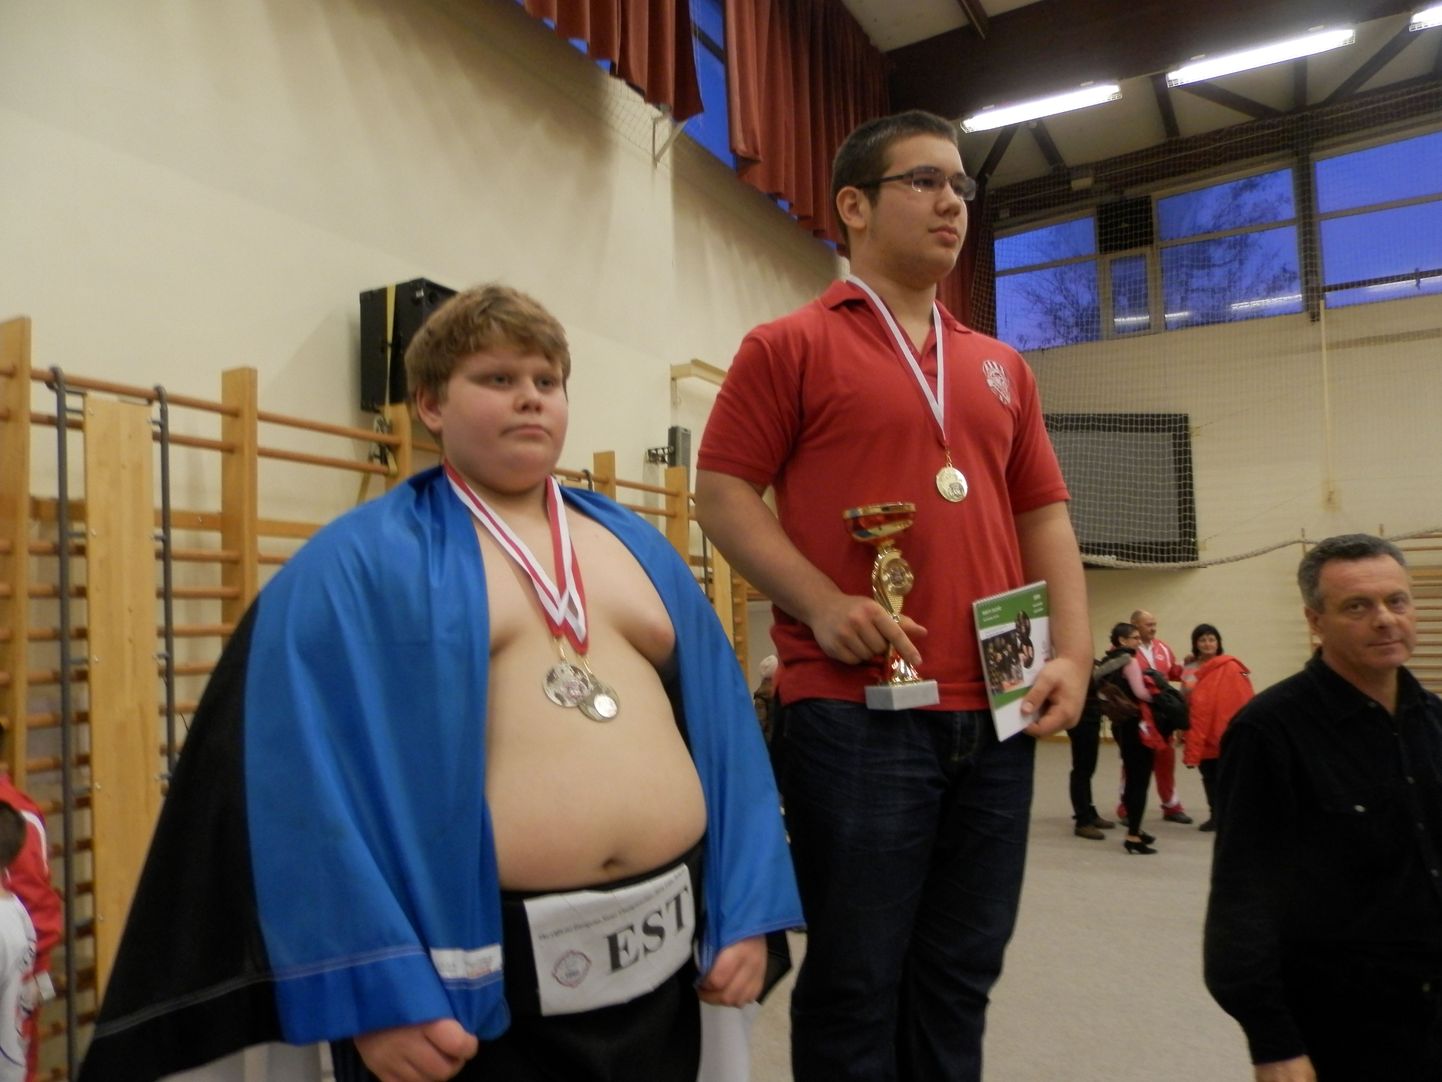 U12 vanuseklassi Euroopa meister raskekaalus Xsander Solbaja näitas Ungaris peetud võistlusel, et on konkurentsivõimeline ka kadettide raskekaalus.